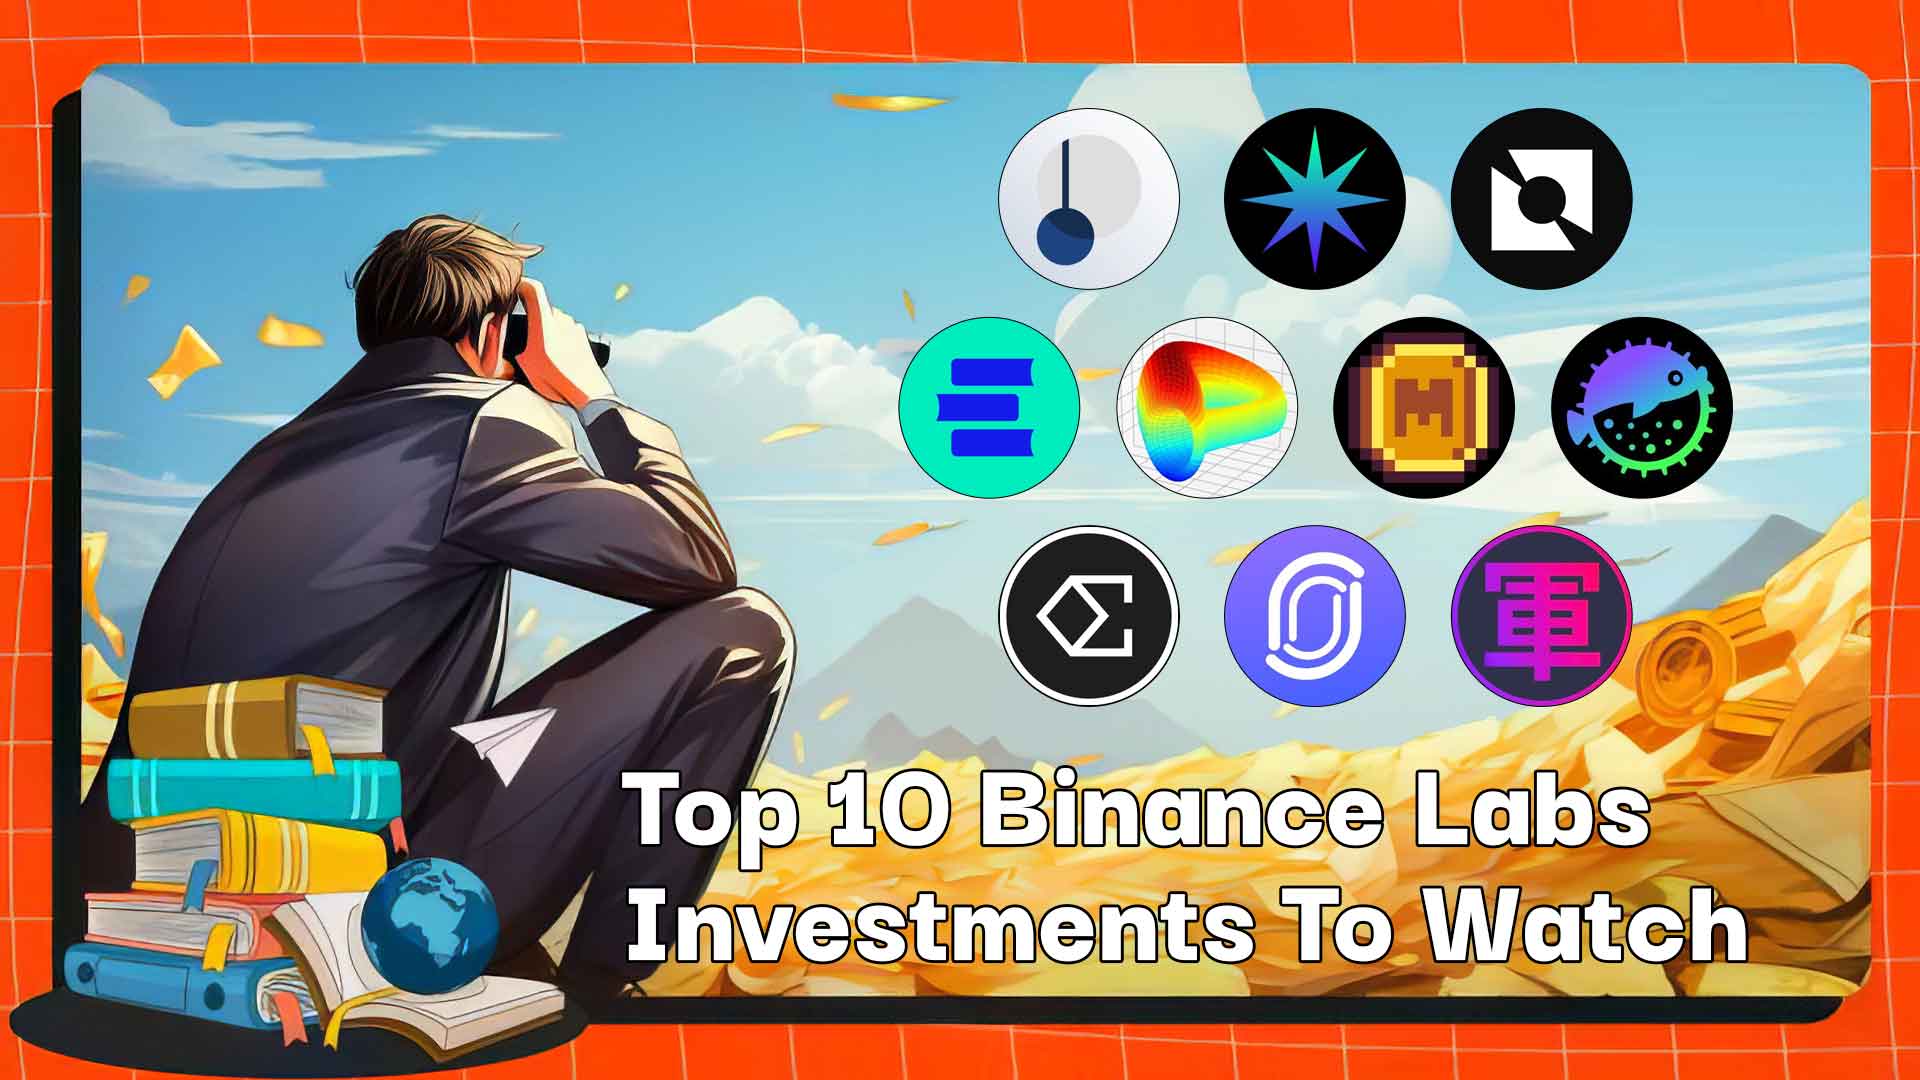 Die 10 besten Binance Labs-Investitionen, die Sie im Auge behalten sollten